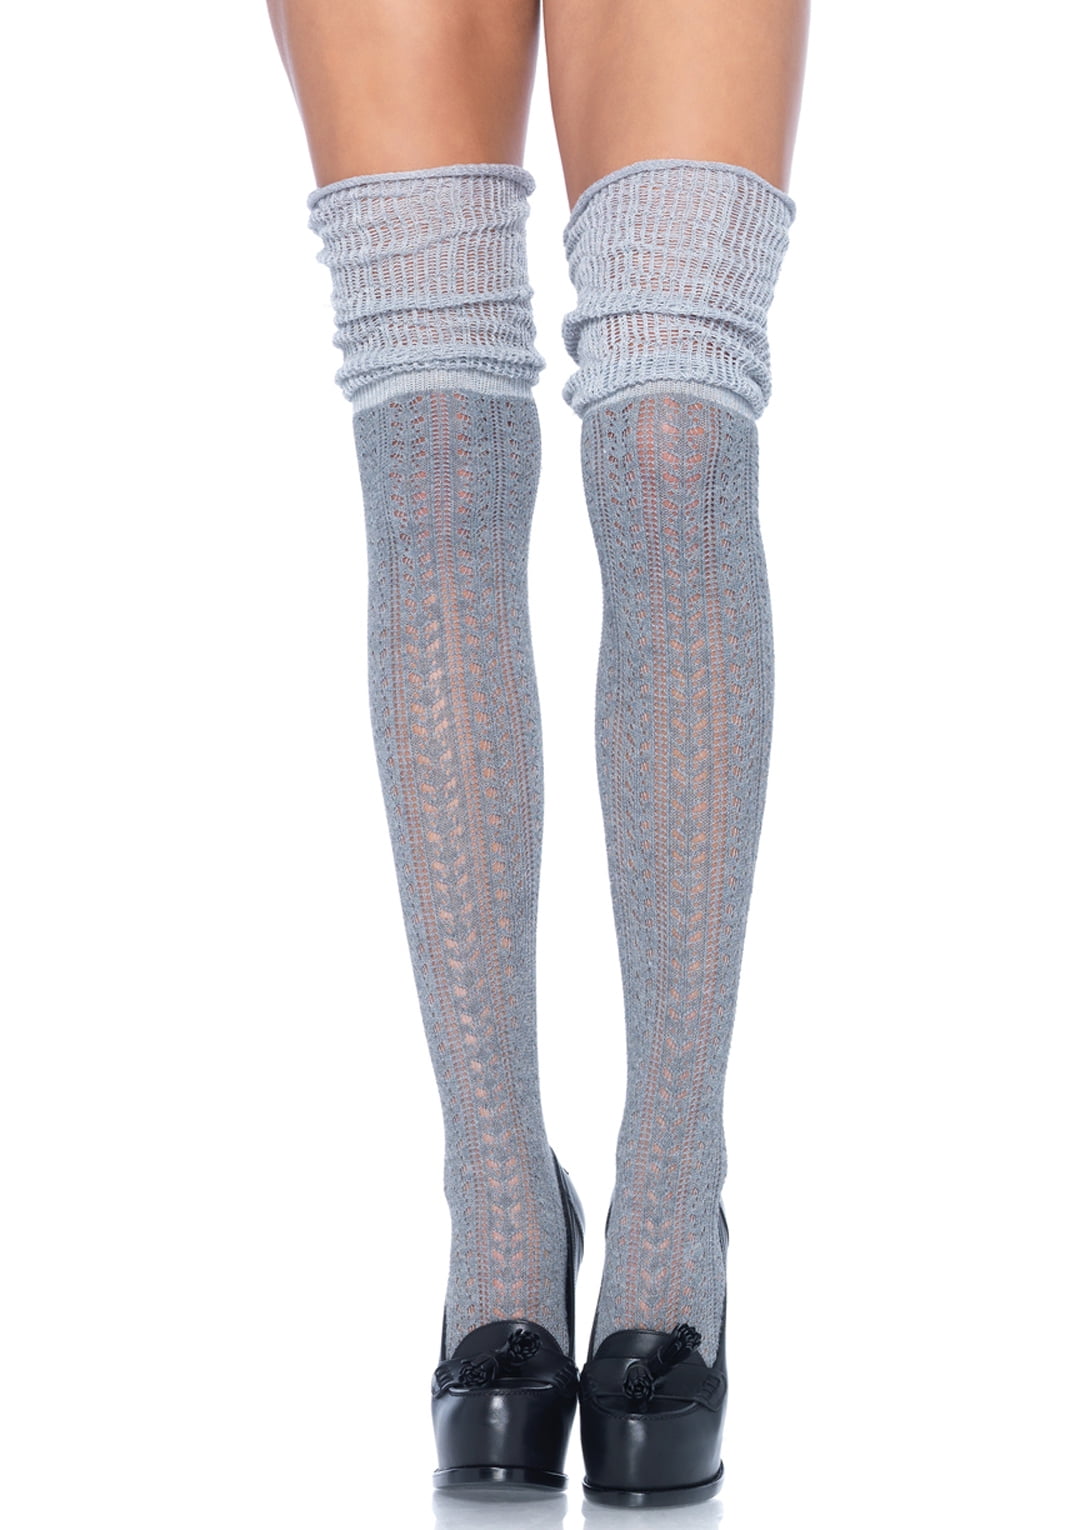 Ladies white thigh high Pointelle cotton stockings